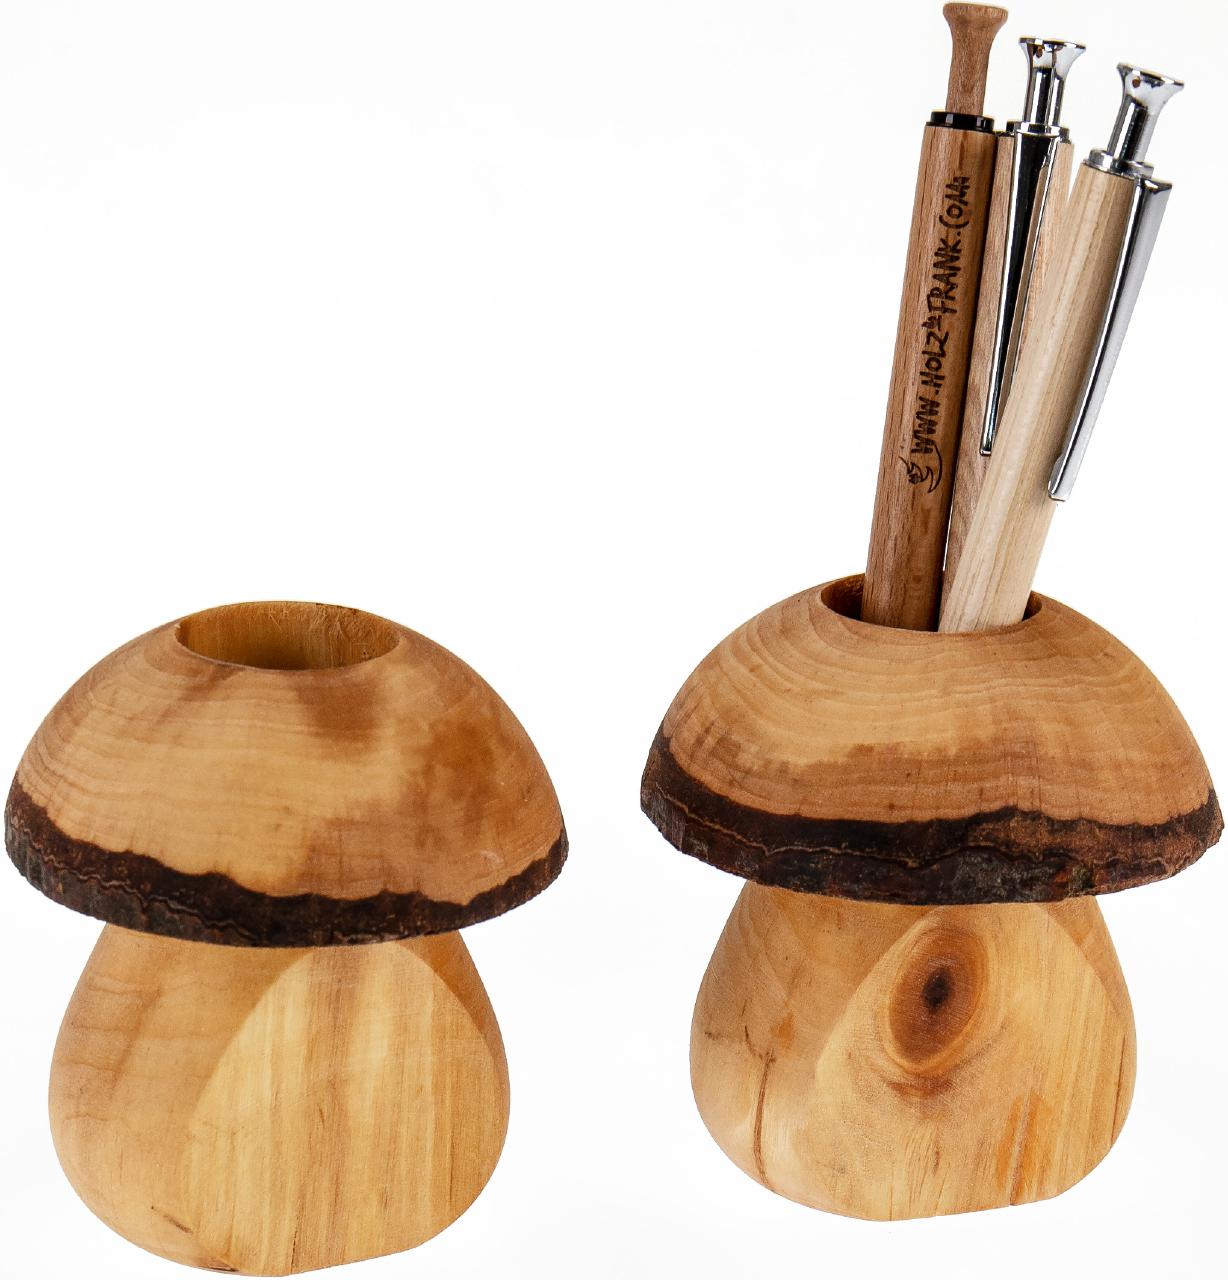 Gedrechselter Stifteköcher aus geölter Erle in Pilzform - für Ordnung auf dem Schreibtisch